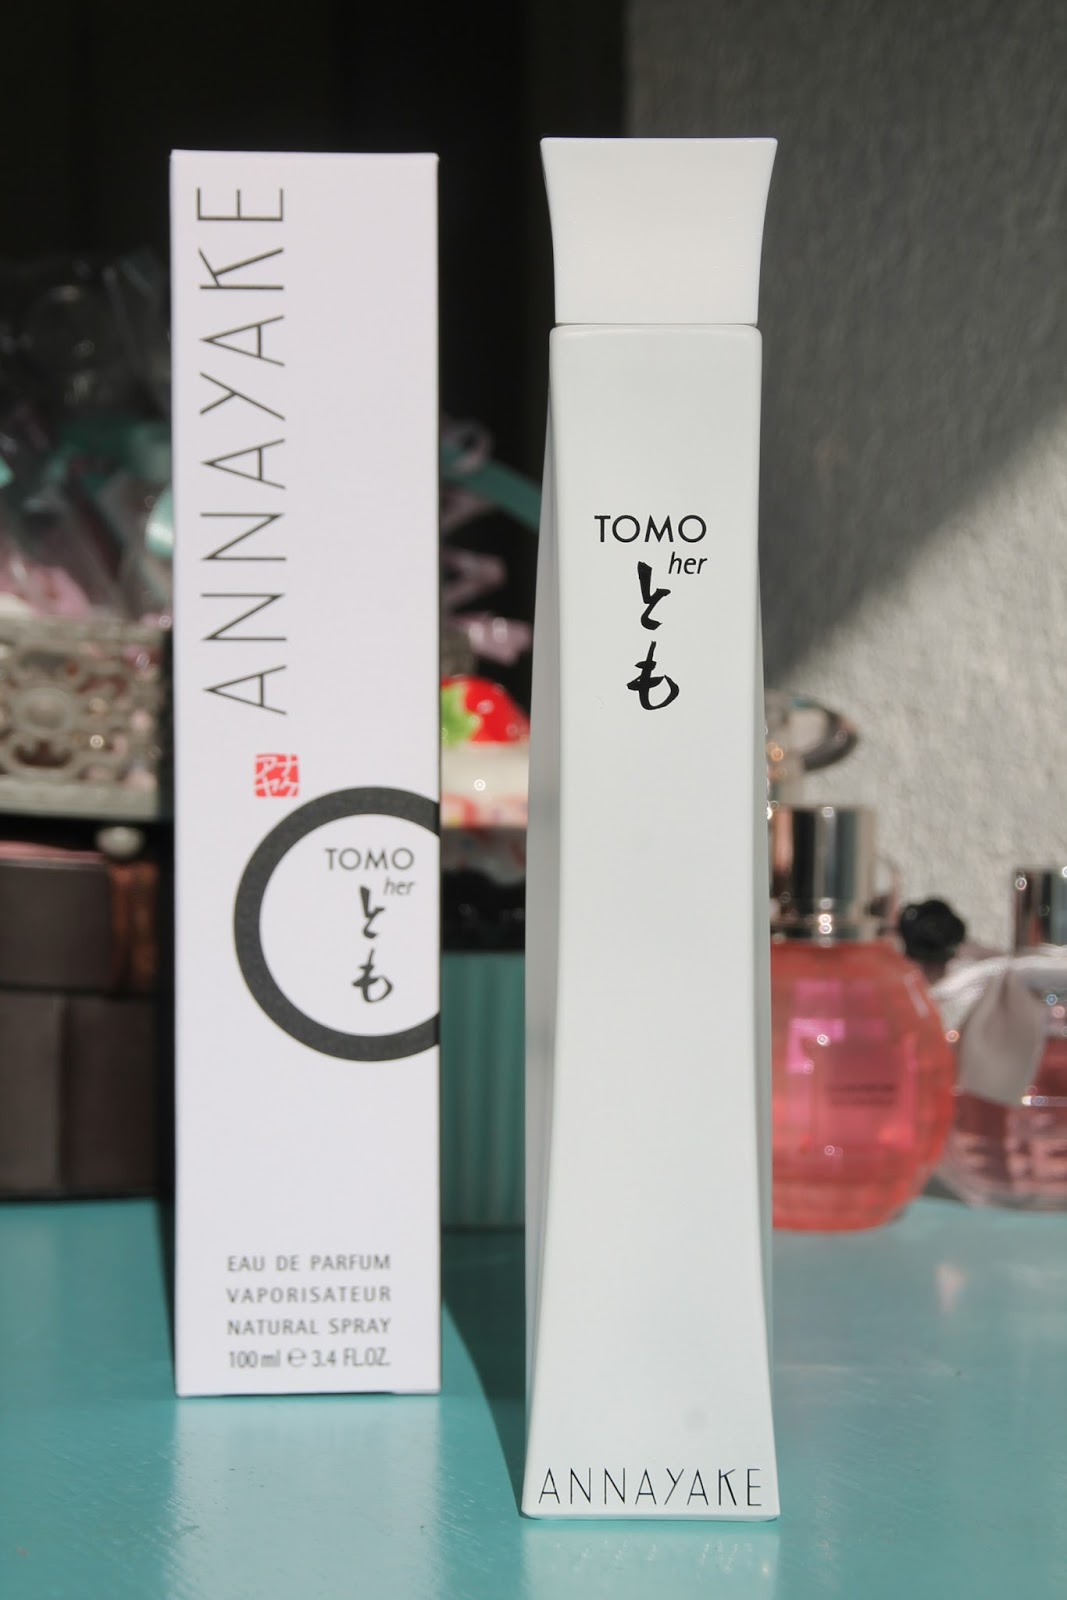 Crystal\'s Reviews: Annayake Tomo for her eau de parfum